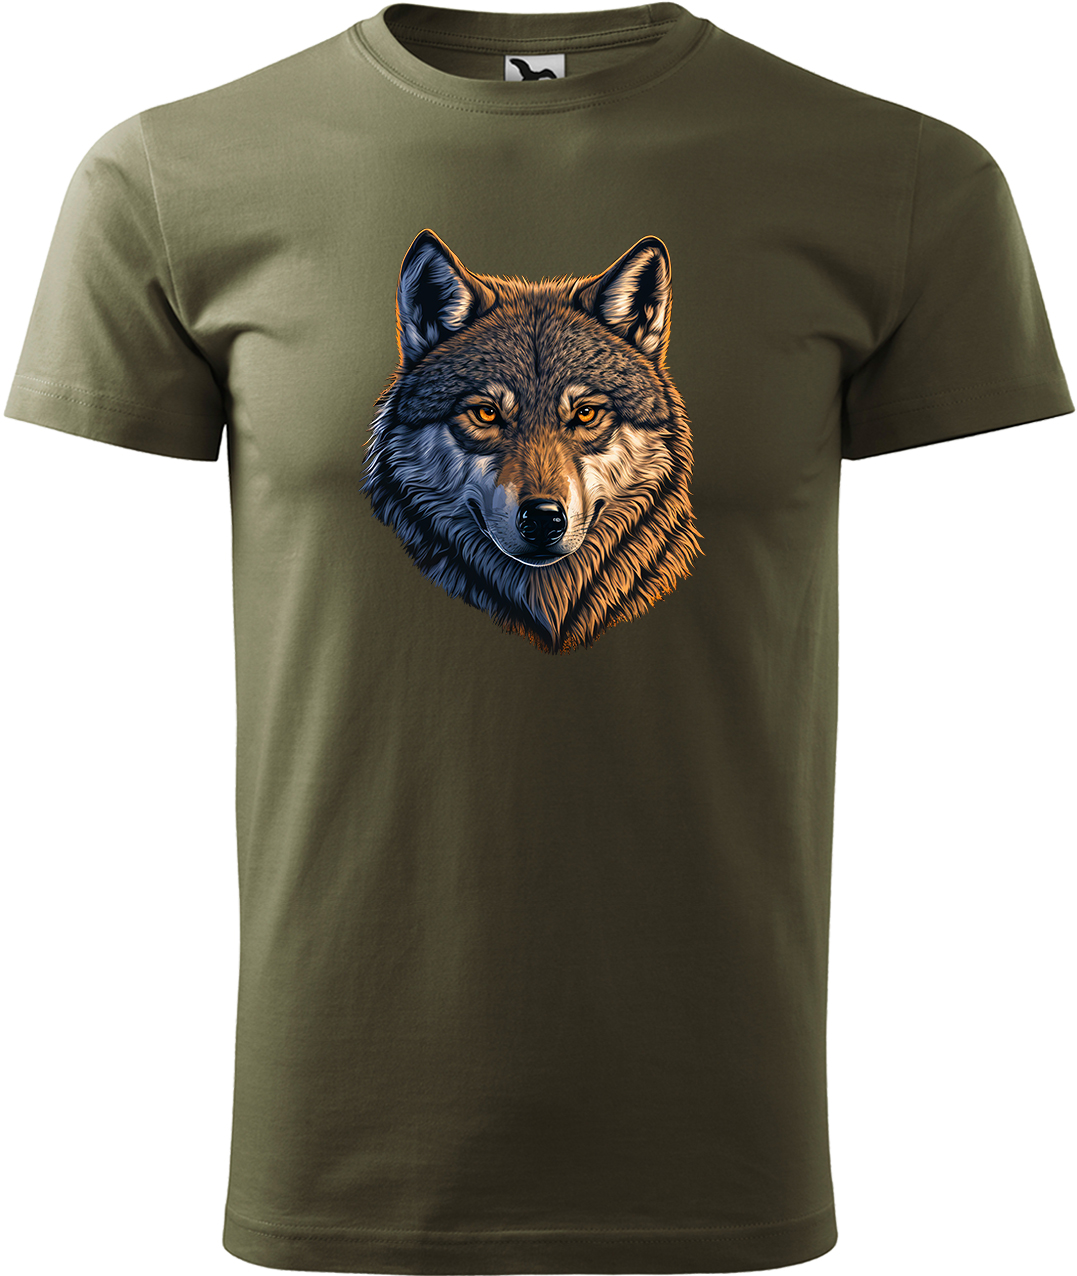 Pánské tričko s vlkem - Hlava vlka Velikost: S, Barva: Military (69), Střih: pánský